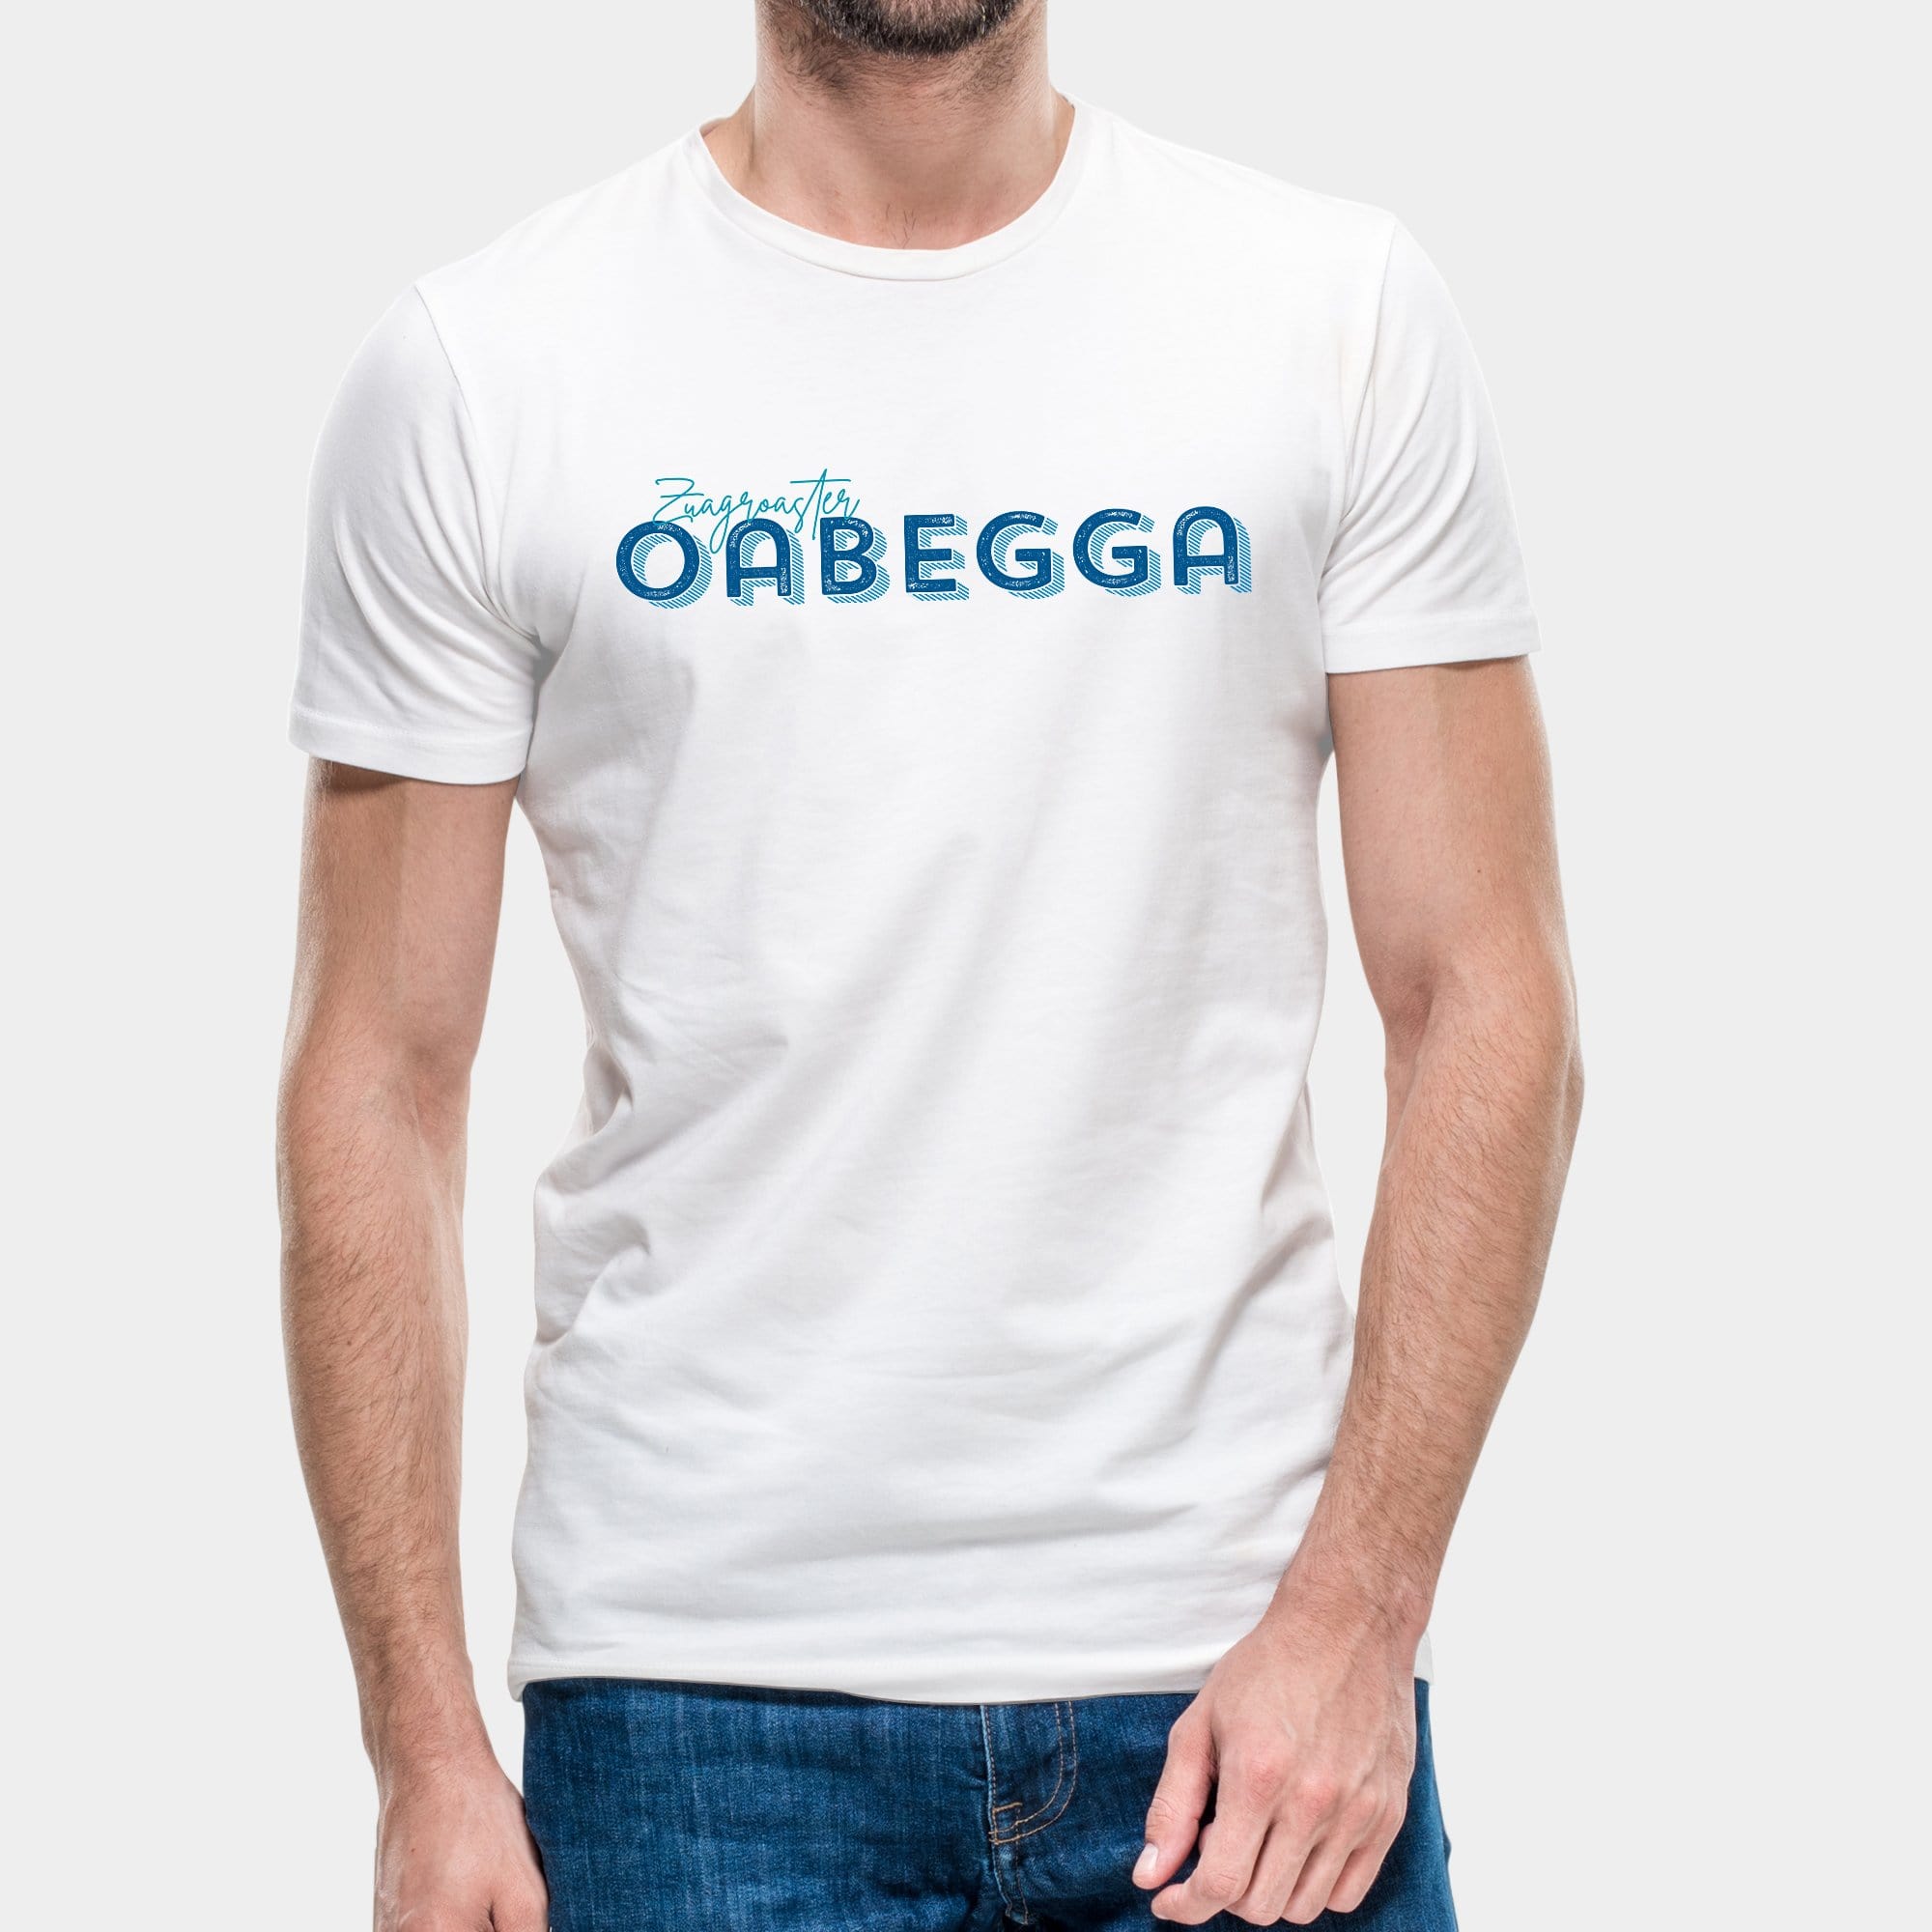 Projekt Herren-T-Shirt "Zuagroaster Oabegga" S / weiß - aus nachhaltiger und fairer Produktion